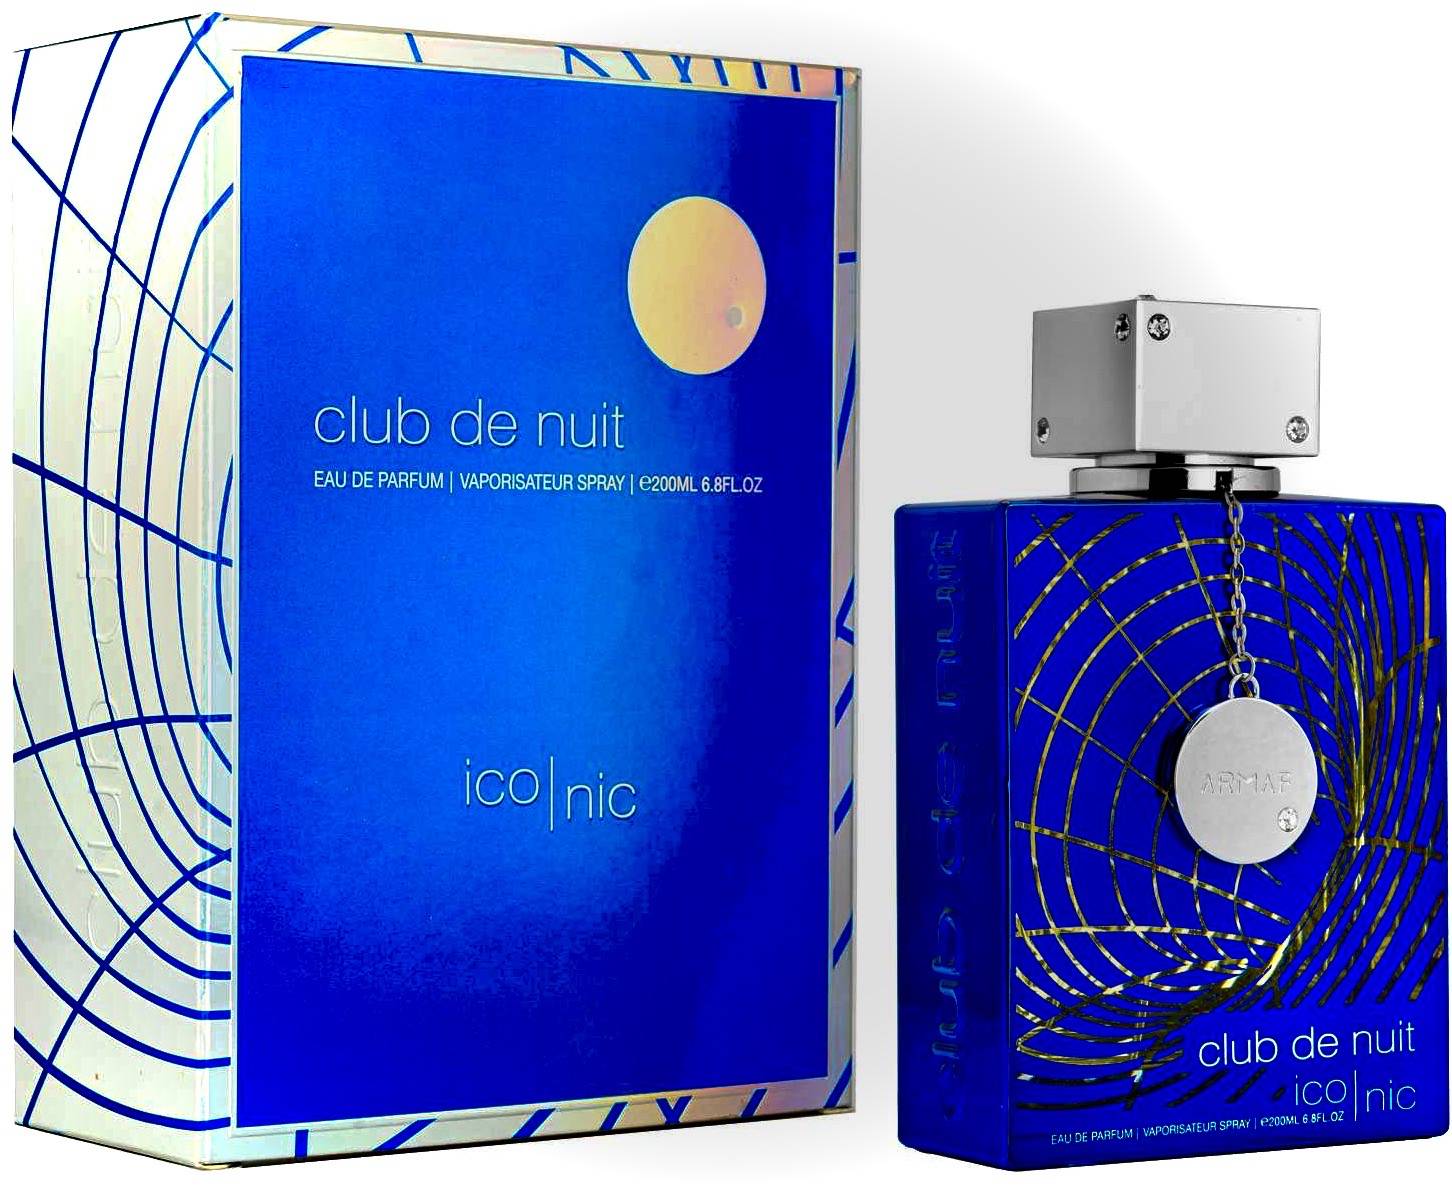 Armaf Club de Nuit ICONIC 6.8.oz Eau de Parfum